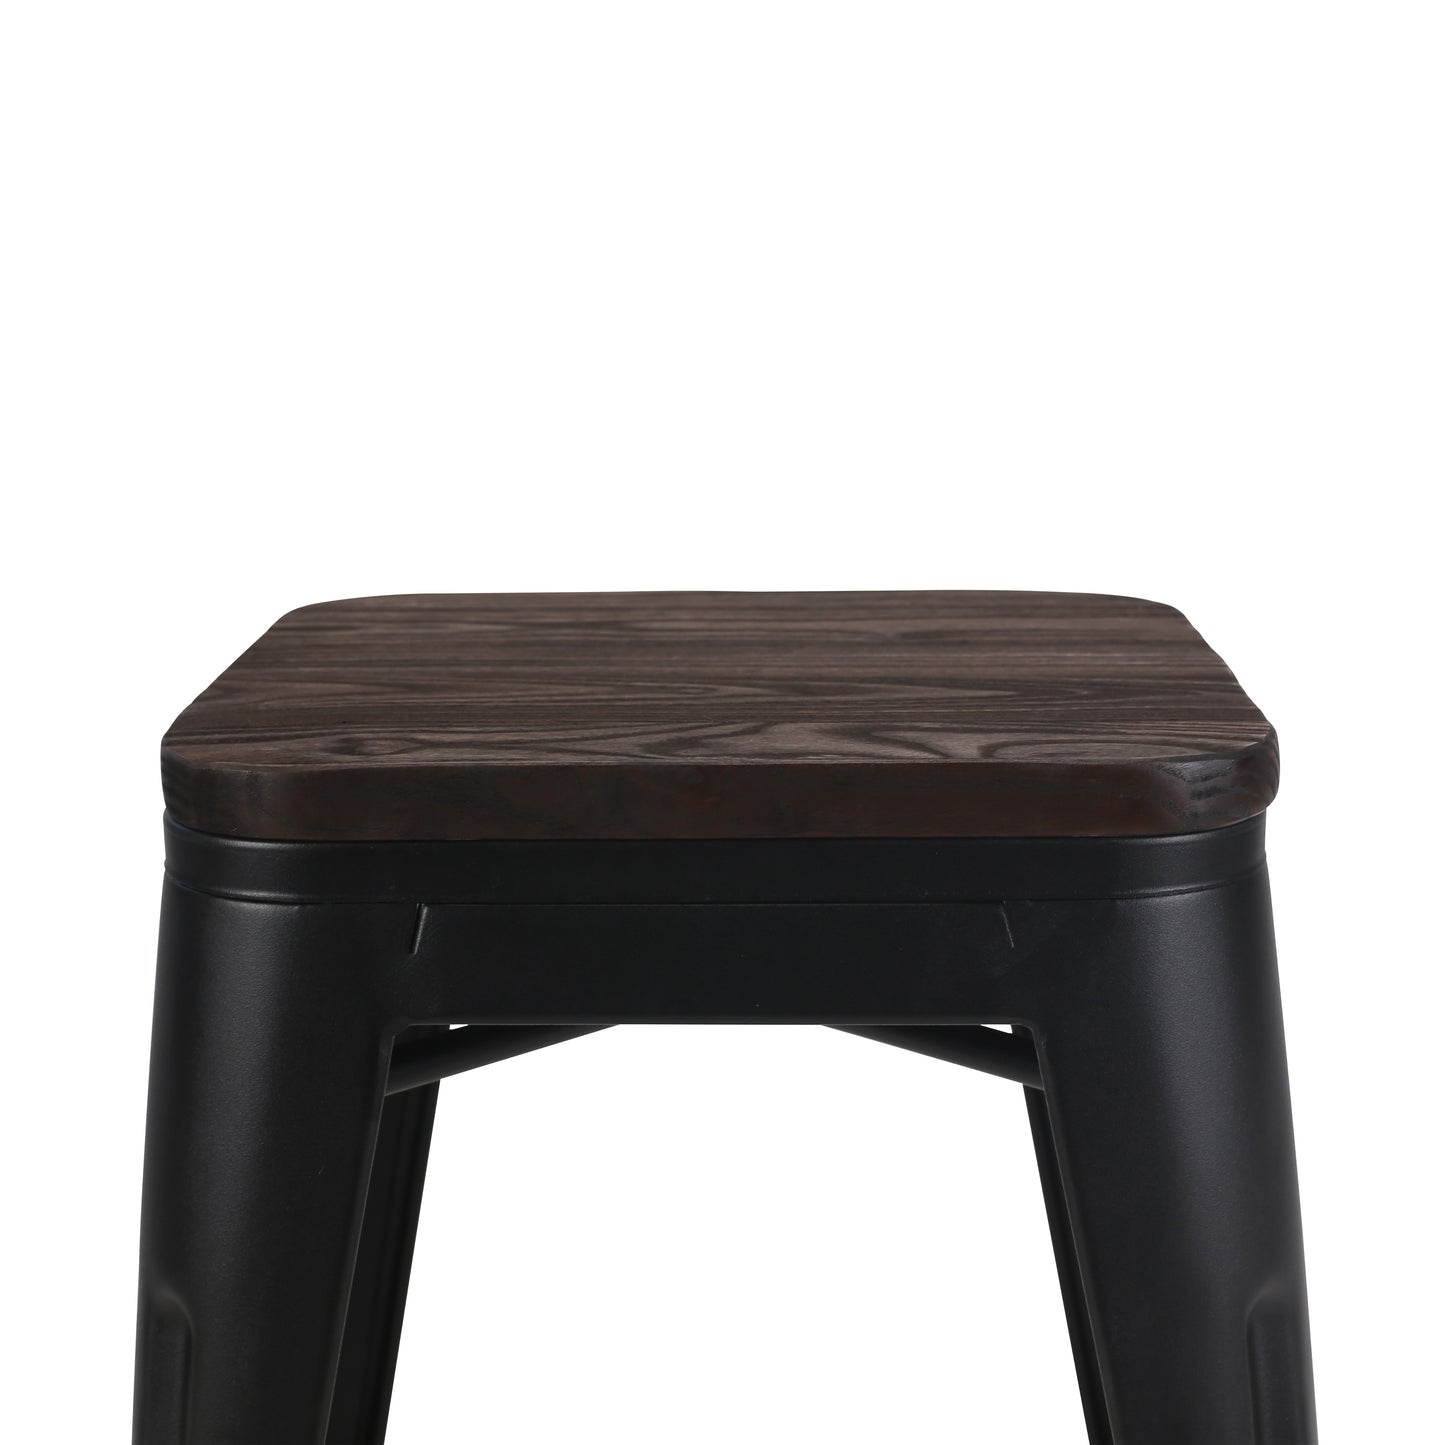 Lot de 4 tabourets en métal noir mat style industriel et assise en bois foncé - Hauteur 46 cm